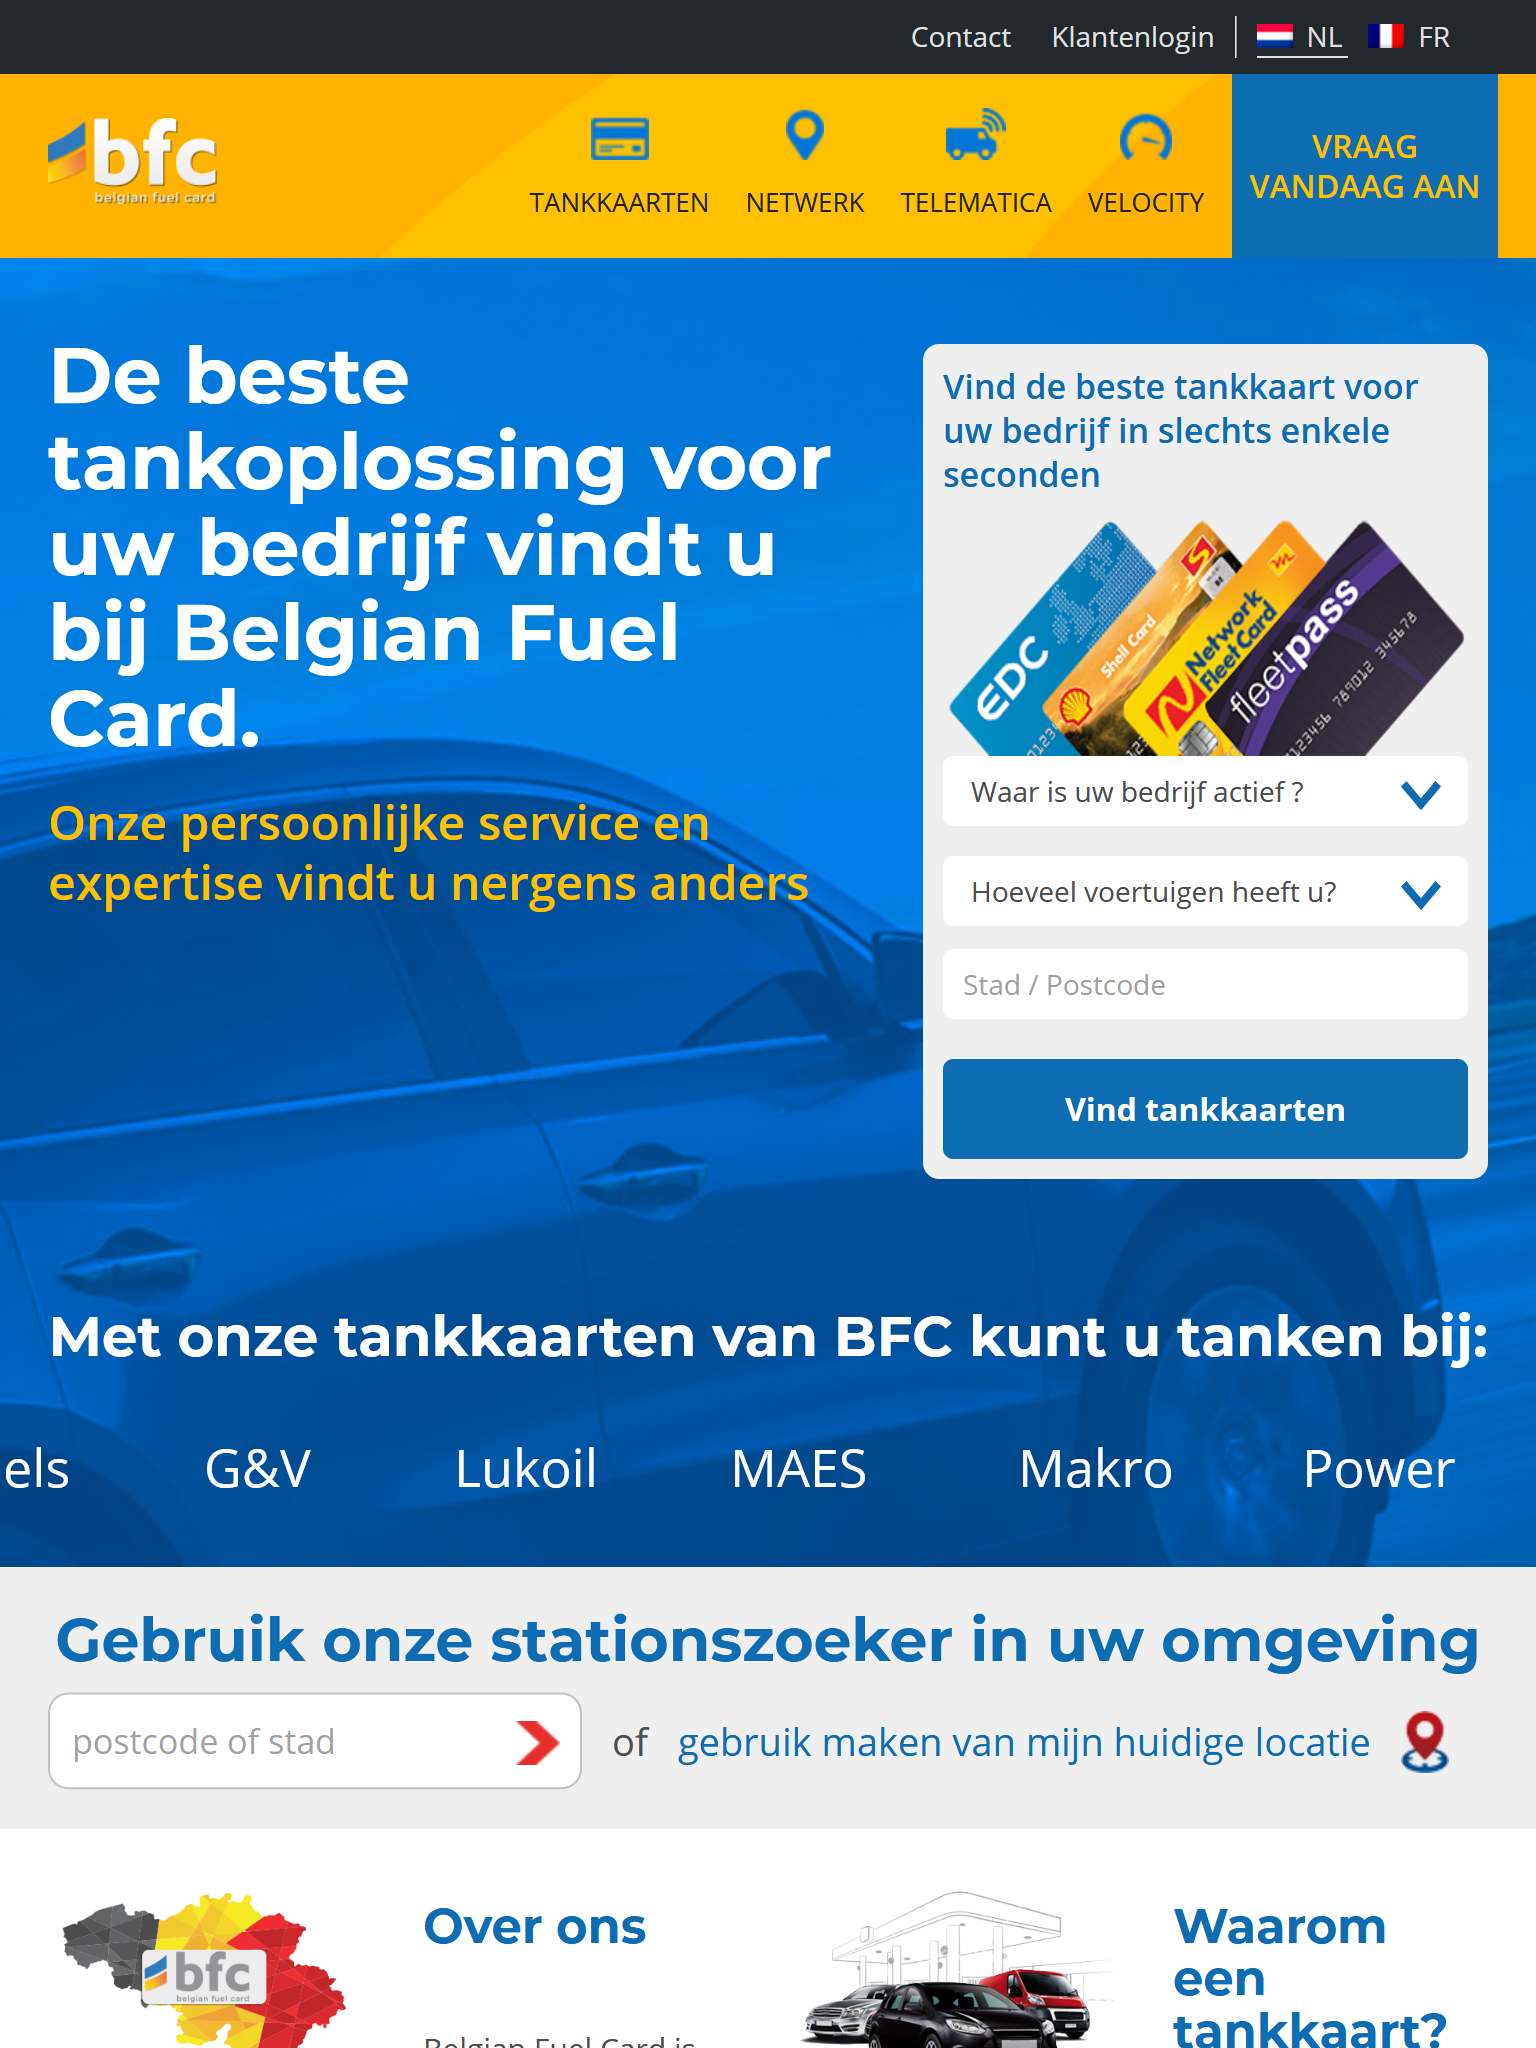 Belgian Fuel Card